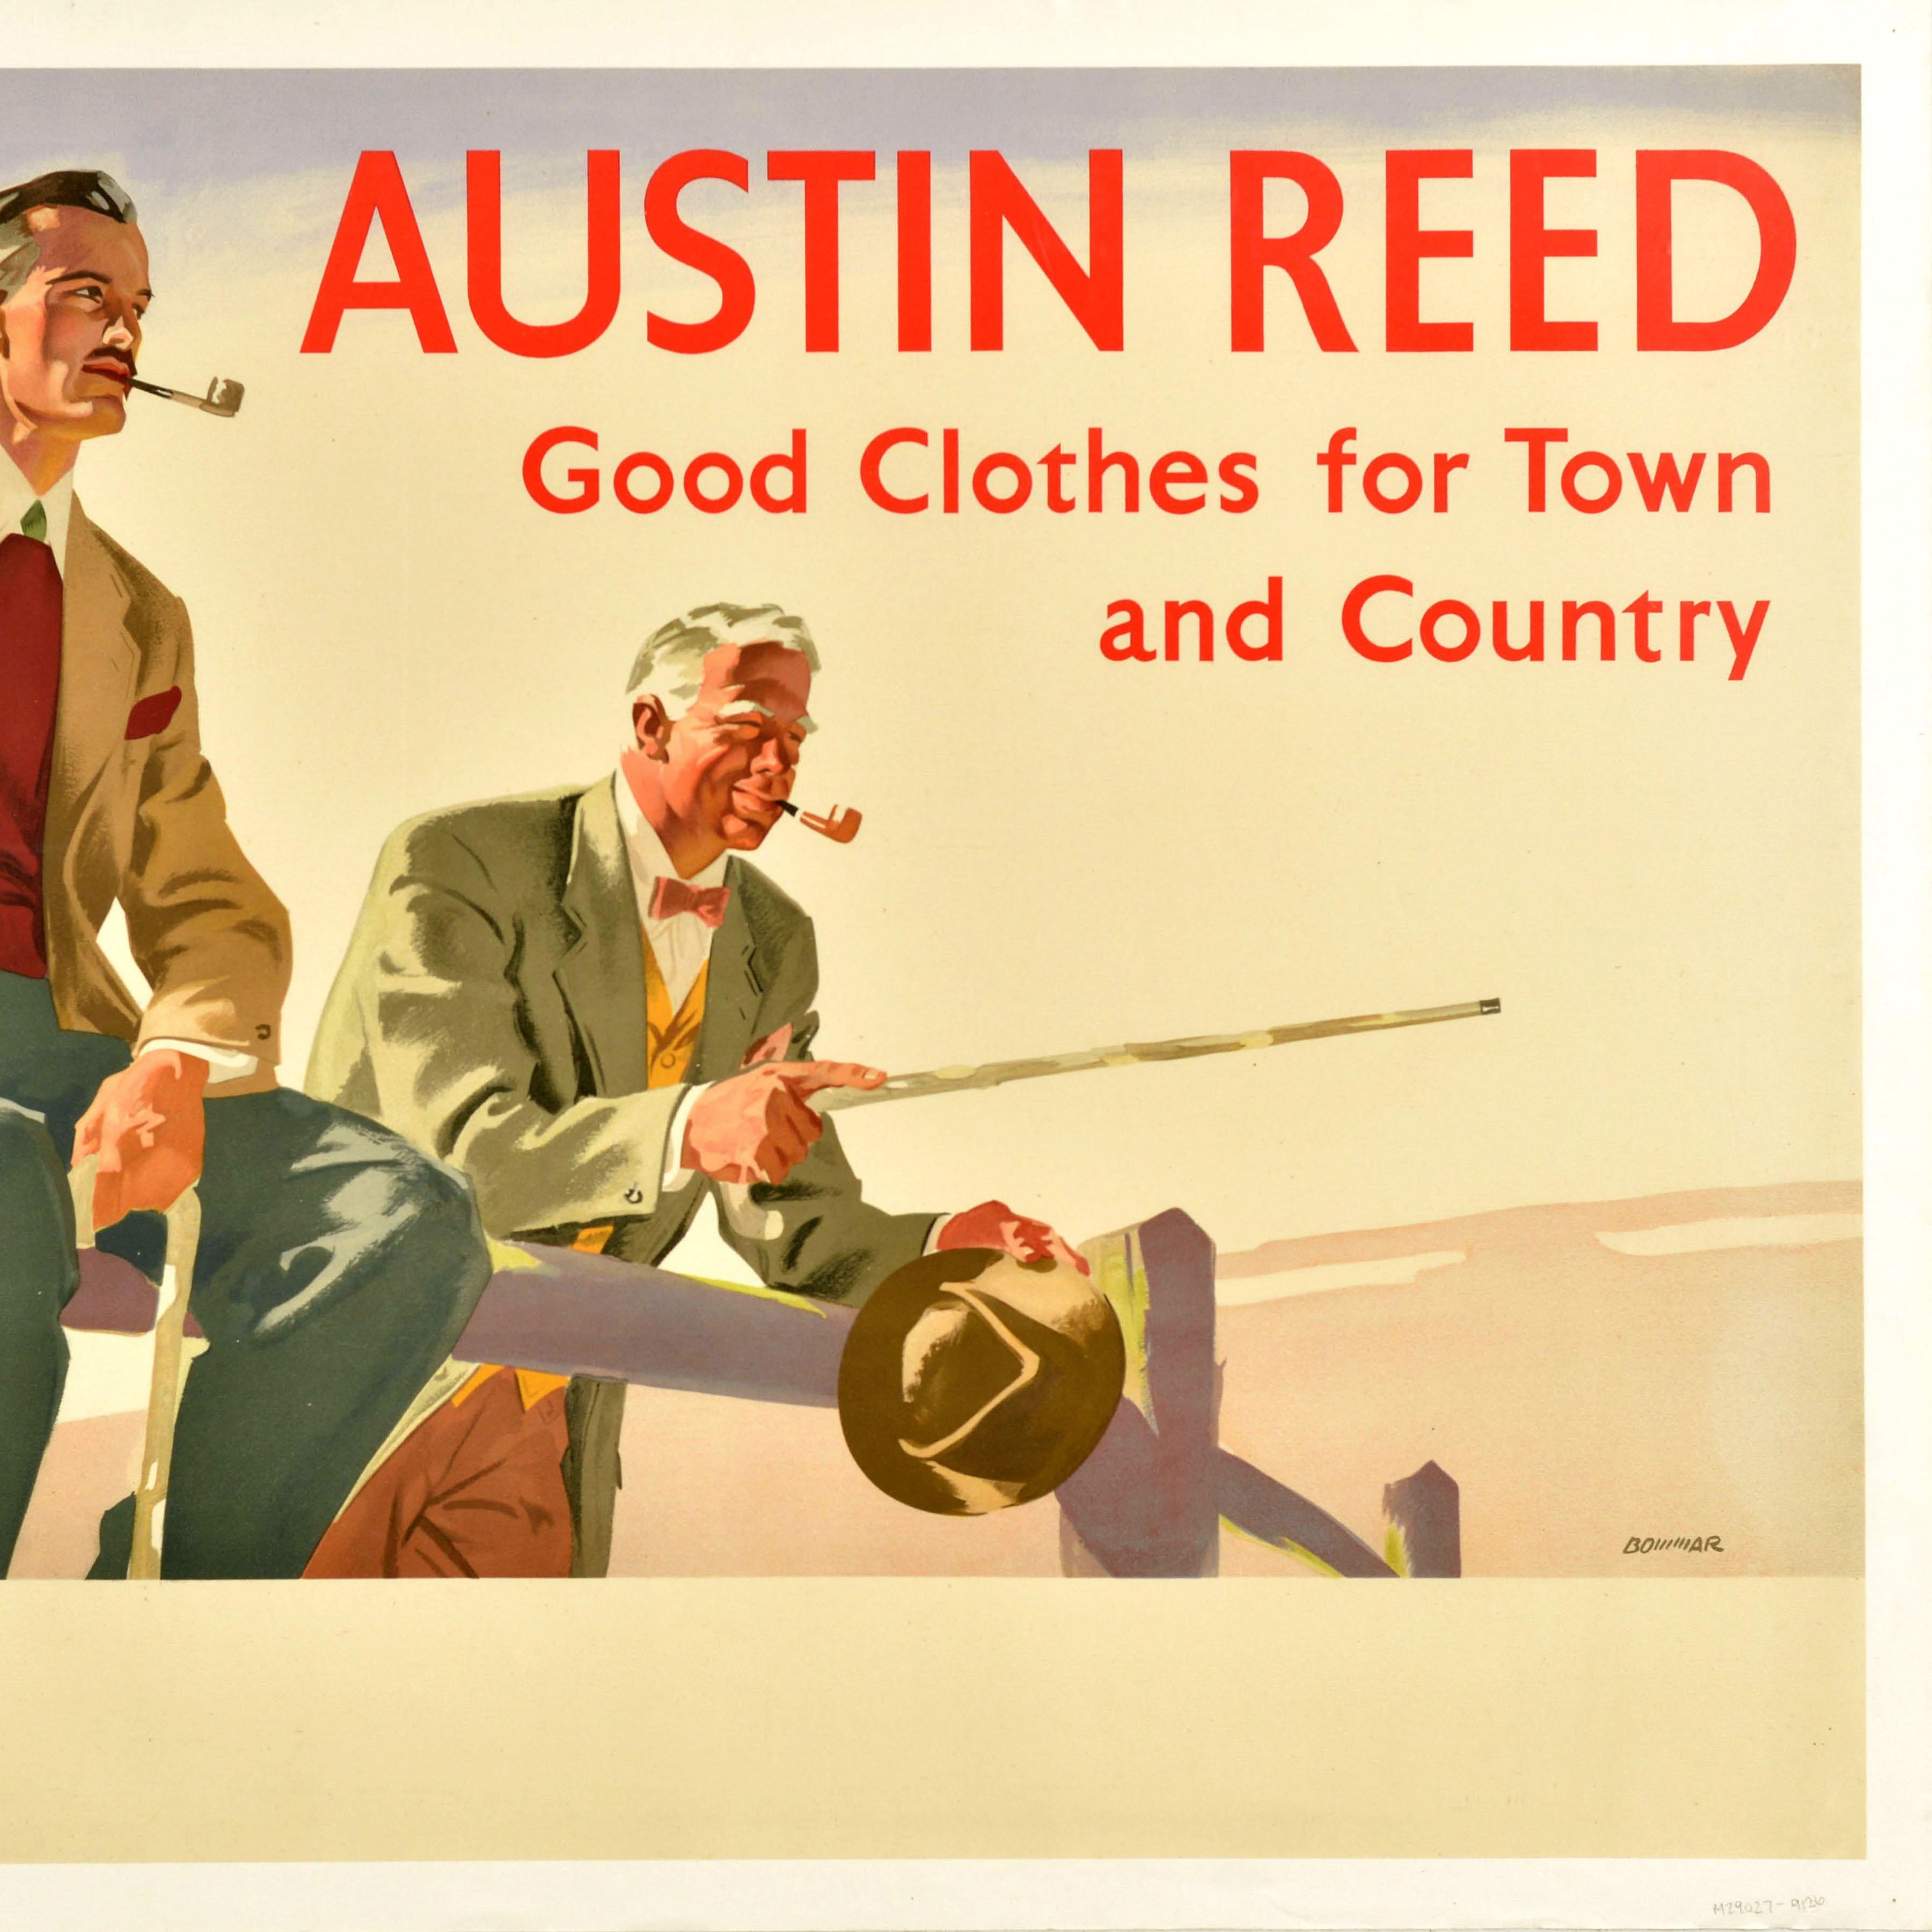 Originelles Werbeplakat für Herrenmode im Vintage-Stil - Austin Reed Good Clothes for Town and Country - mit einem beeindruckenden Bild von zwei elegant gekleideten Herren, die Pfeife rauchen, mit dem fettgedruckten Titeltext darüber, wobei der